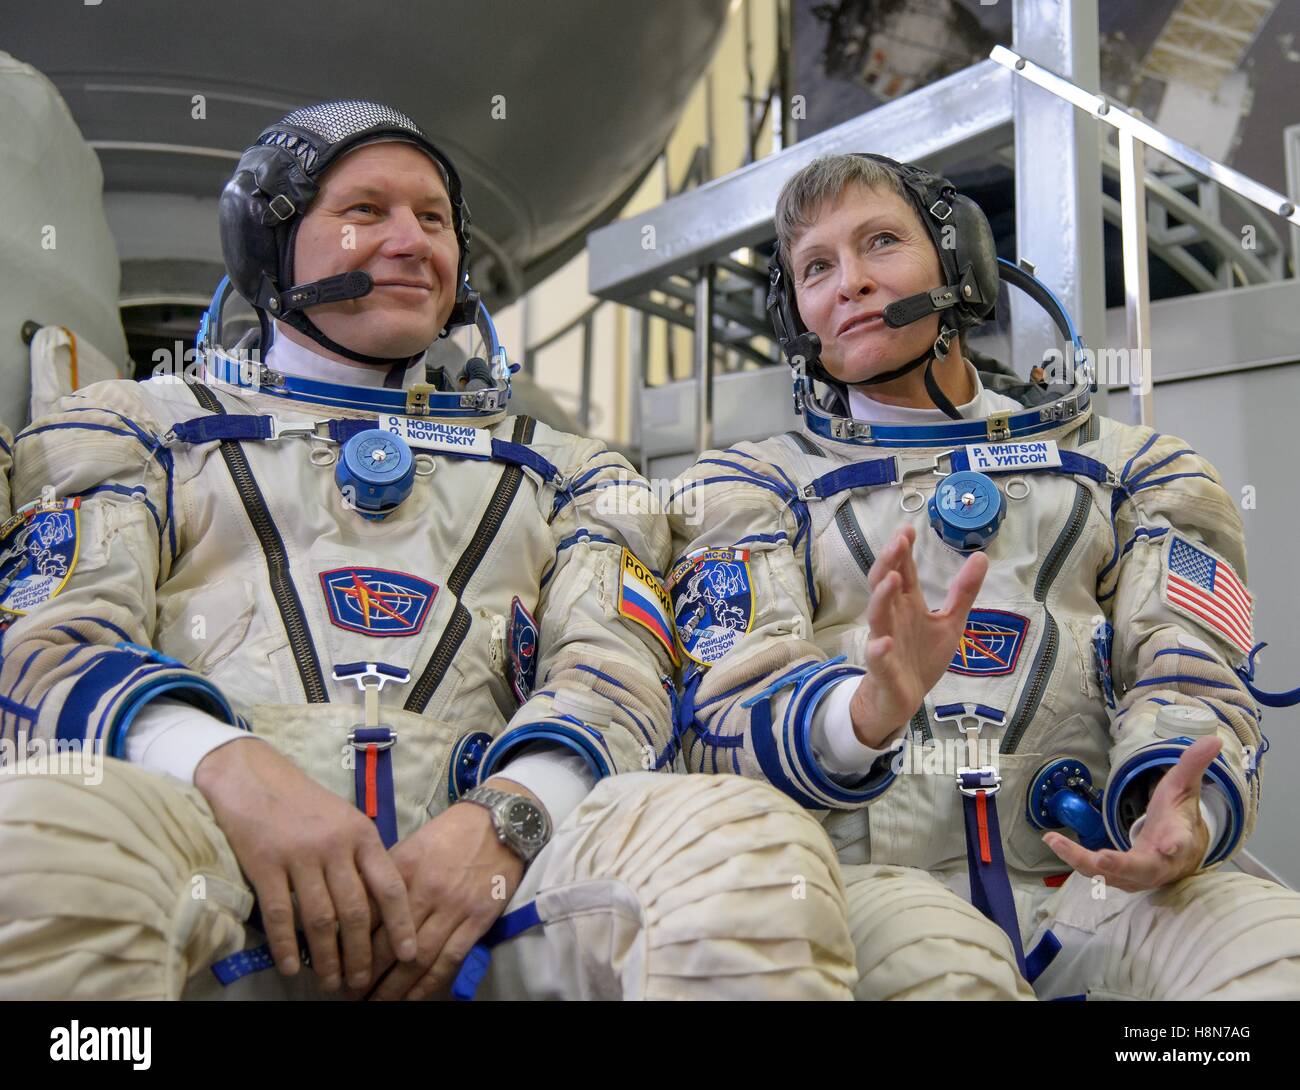 NASA internationale Raumstation Expedition 50 MS Sojus-03 erstklassige Crew Mitglieder russische Kosmonaut Oleg Novitskiy Roskosmos (links) und US-amerikanische Astronautin Peggy Whitson bereiten für ihre Qualifikation Prüfungen im Kosmonauten Training Center 25. Oktober 2016 in Star City, Russland. Stockfoto